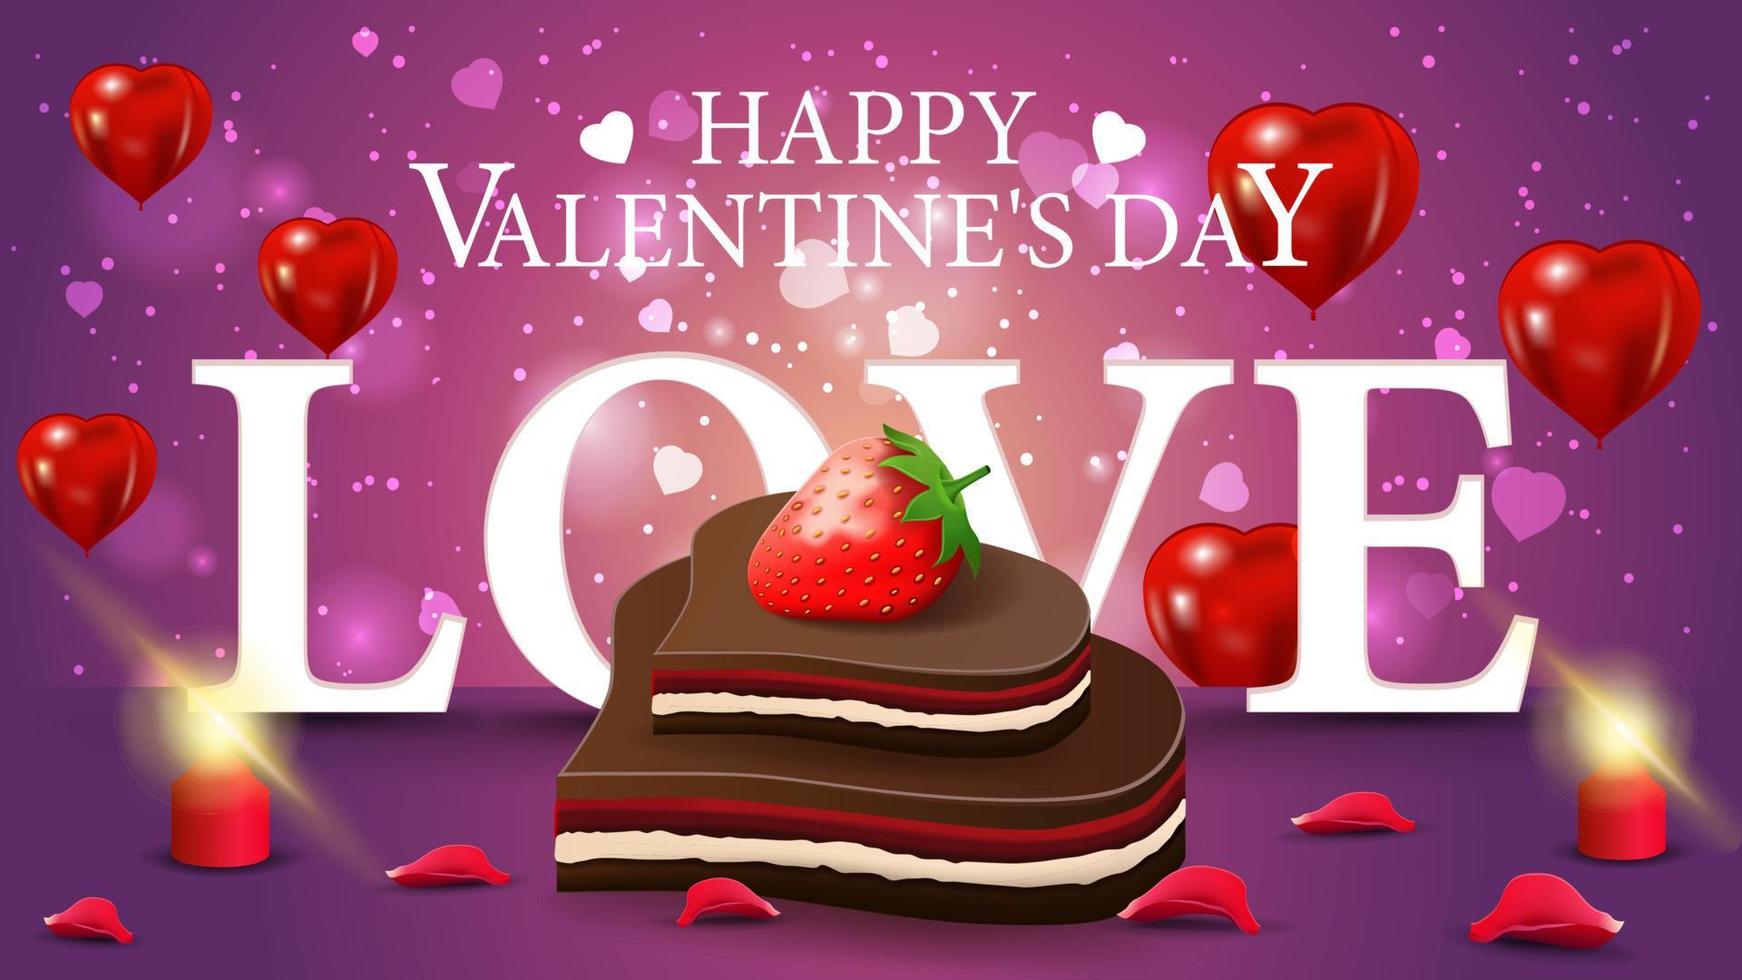 tarjeta de felicitación del día de san valentín púrpura horizontal con dulces de chocolate en forma de corazón y fresa vector